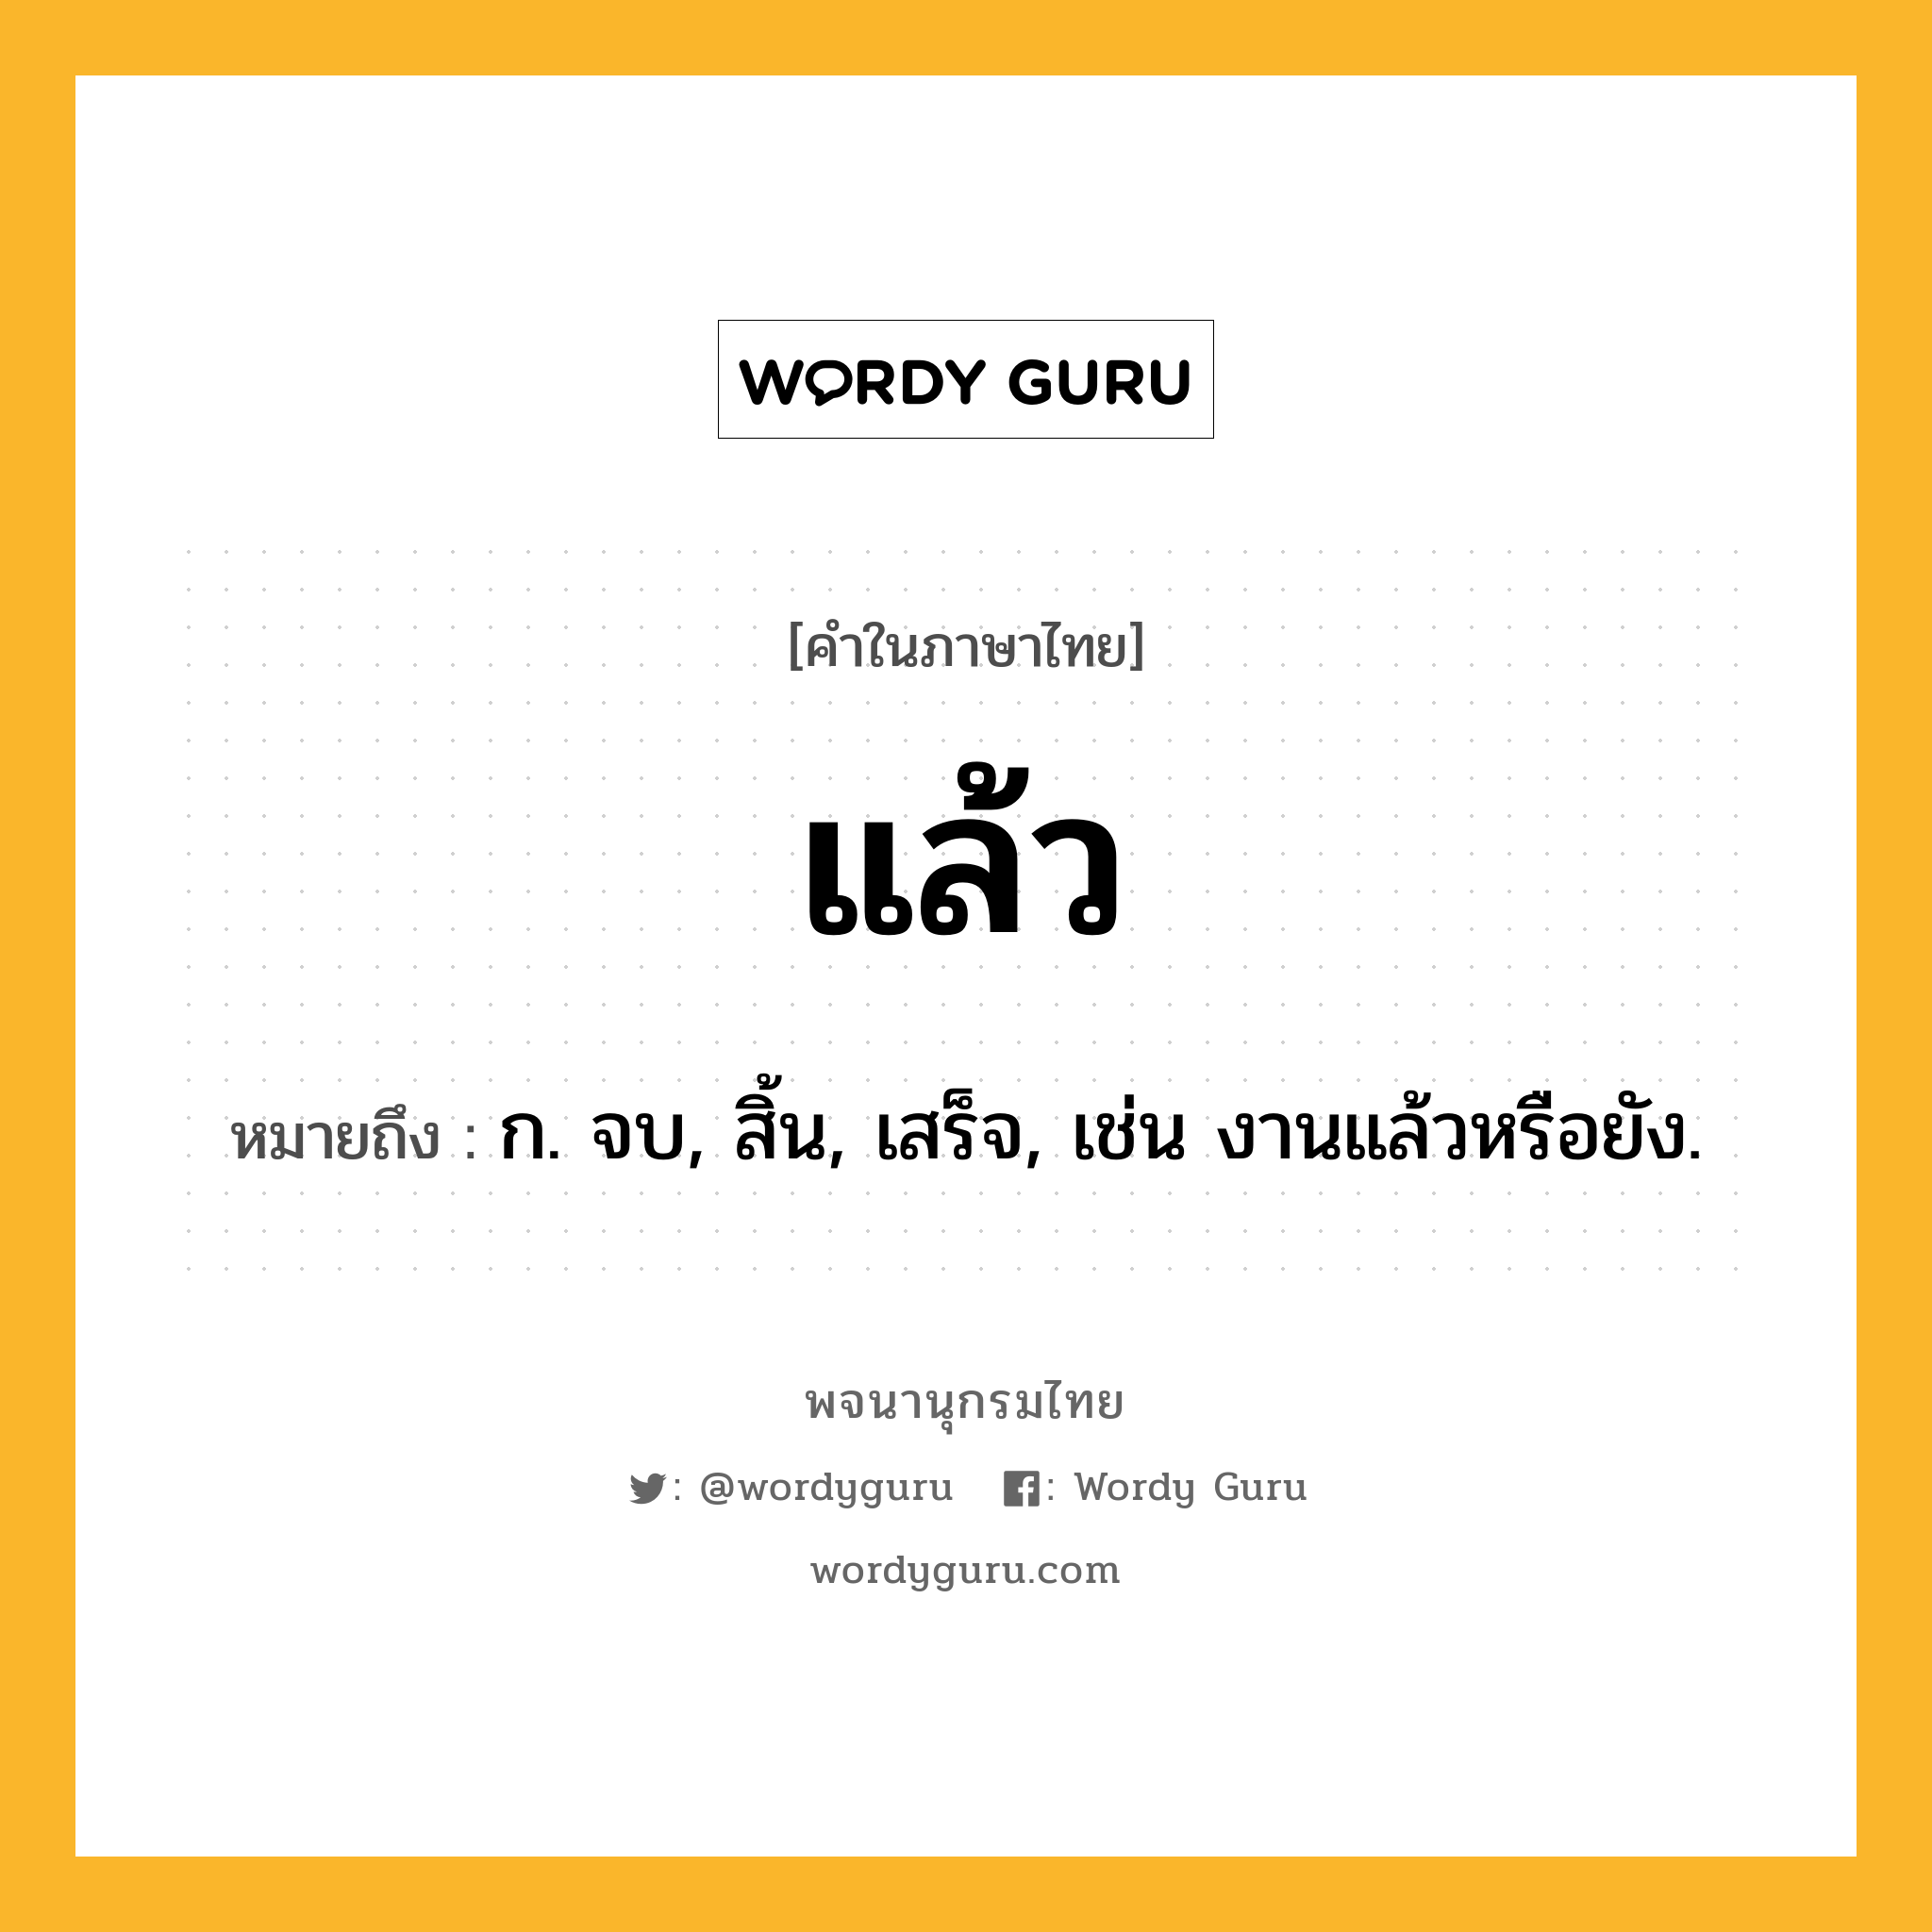 แล้ว หมายถึงอะไร?, คำในภาษาไทย แล้ว หมายถึง ก. จบ, สิ้น, เสร็จ, เช่น งานแล้วหรือยัง.